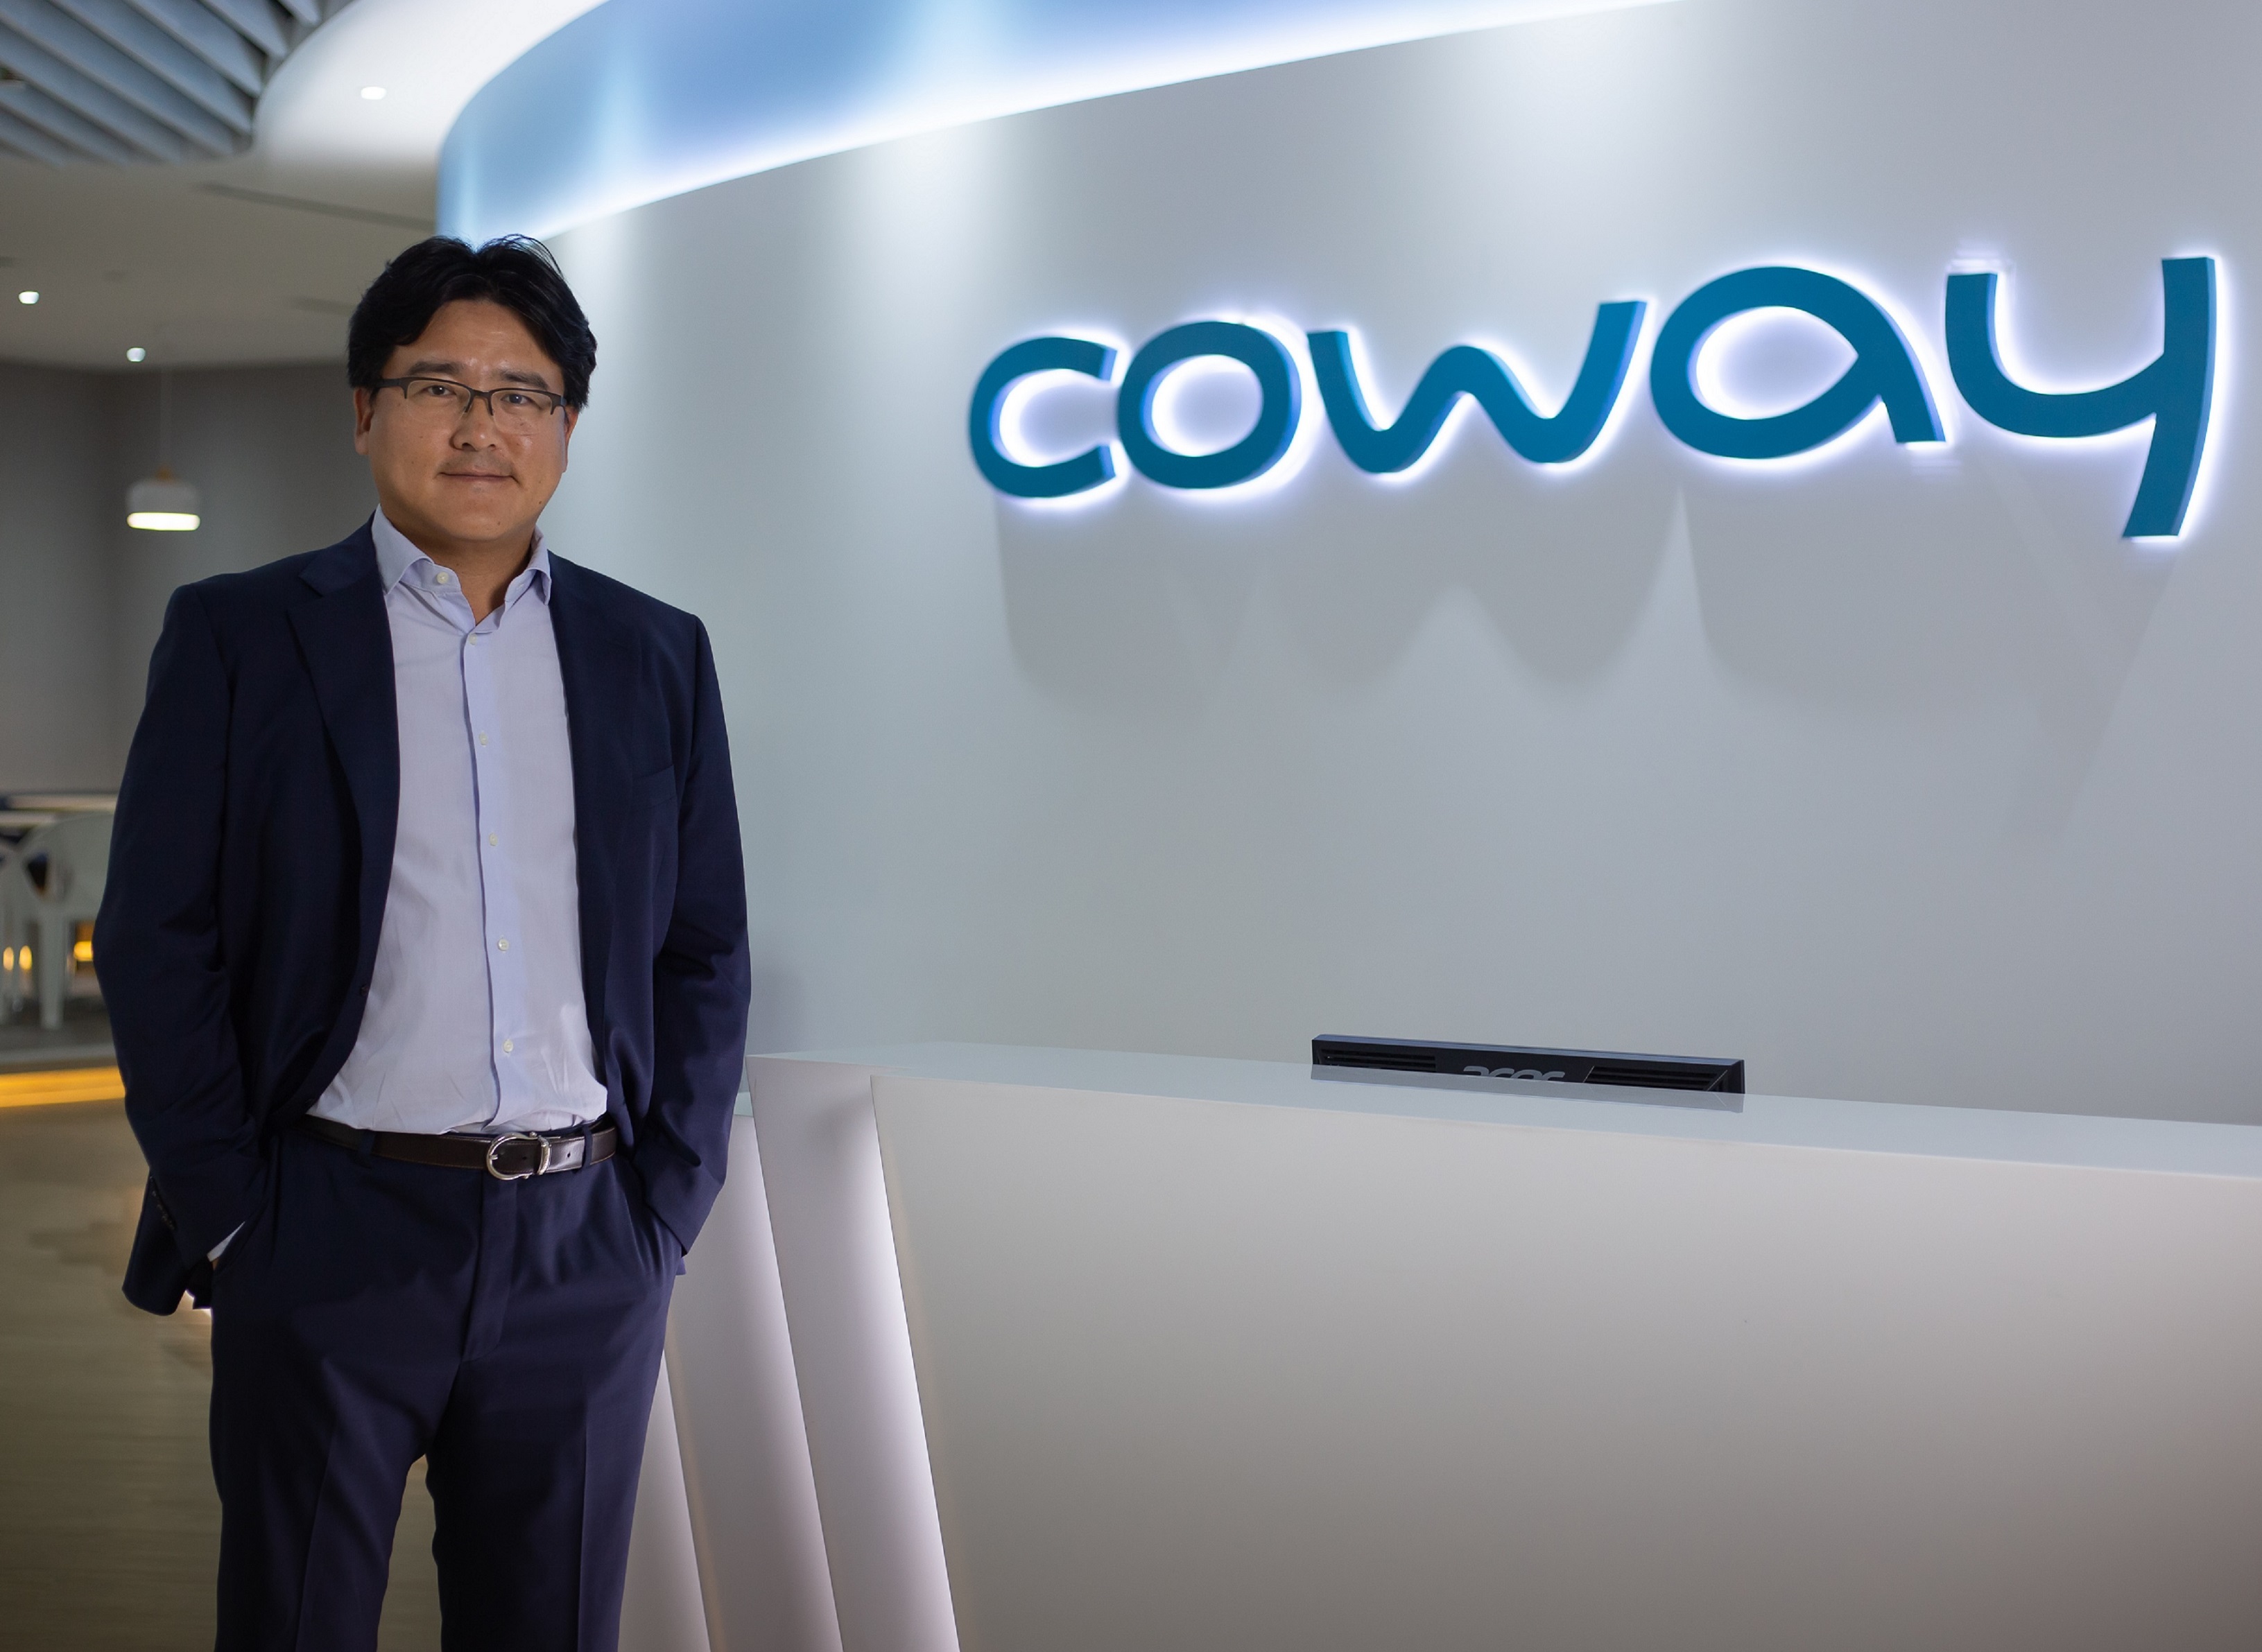 马来西亚Coway执行董事崔起龙.-马来西亚Coway公司提供-